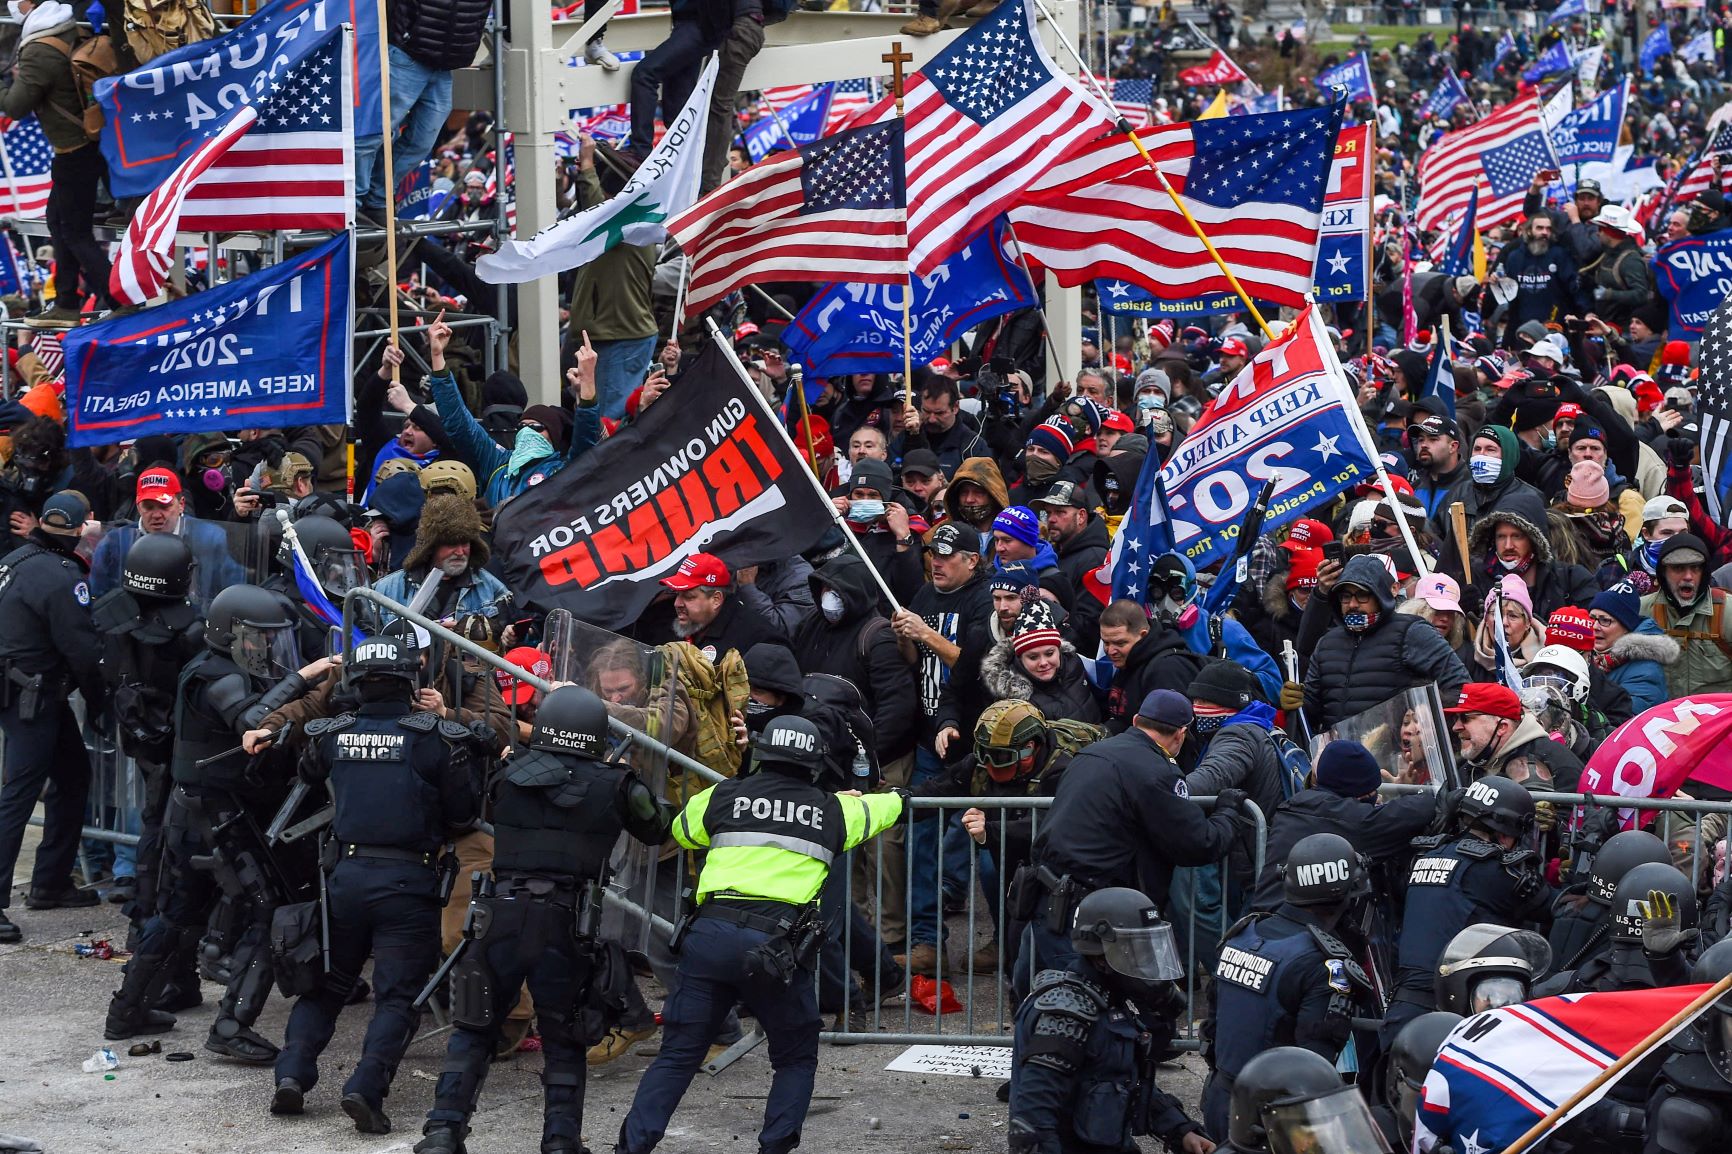 Multidão mobilizada por Trump ataca a polícia e rompe barreira: violência política com consequências ainda imprevisíveis (Foto: Roberto Schmidt/AFP)